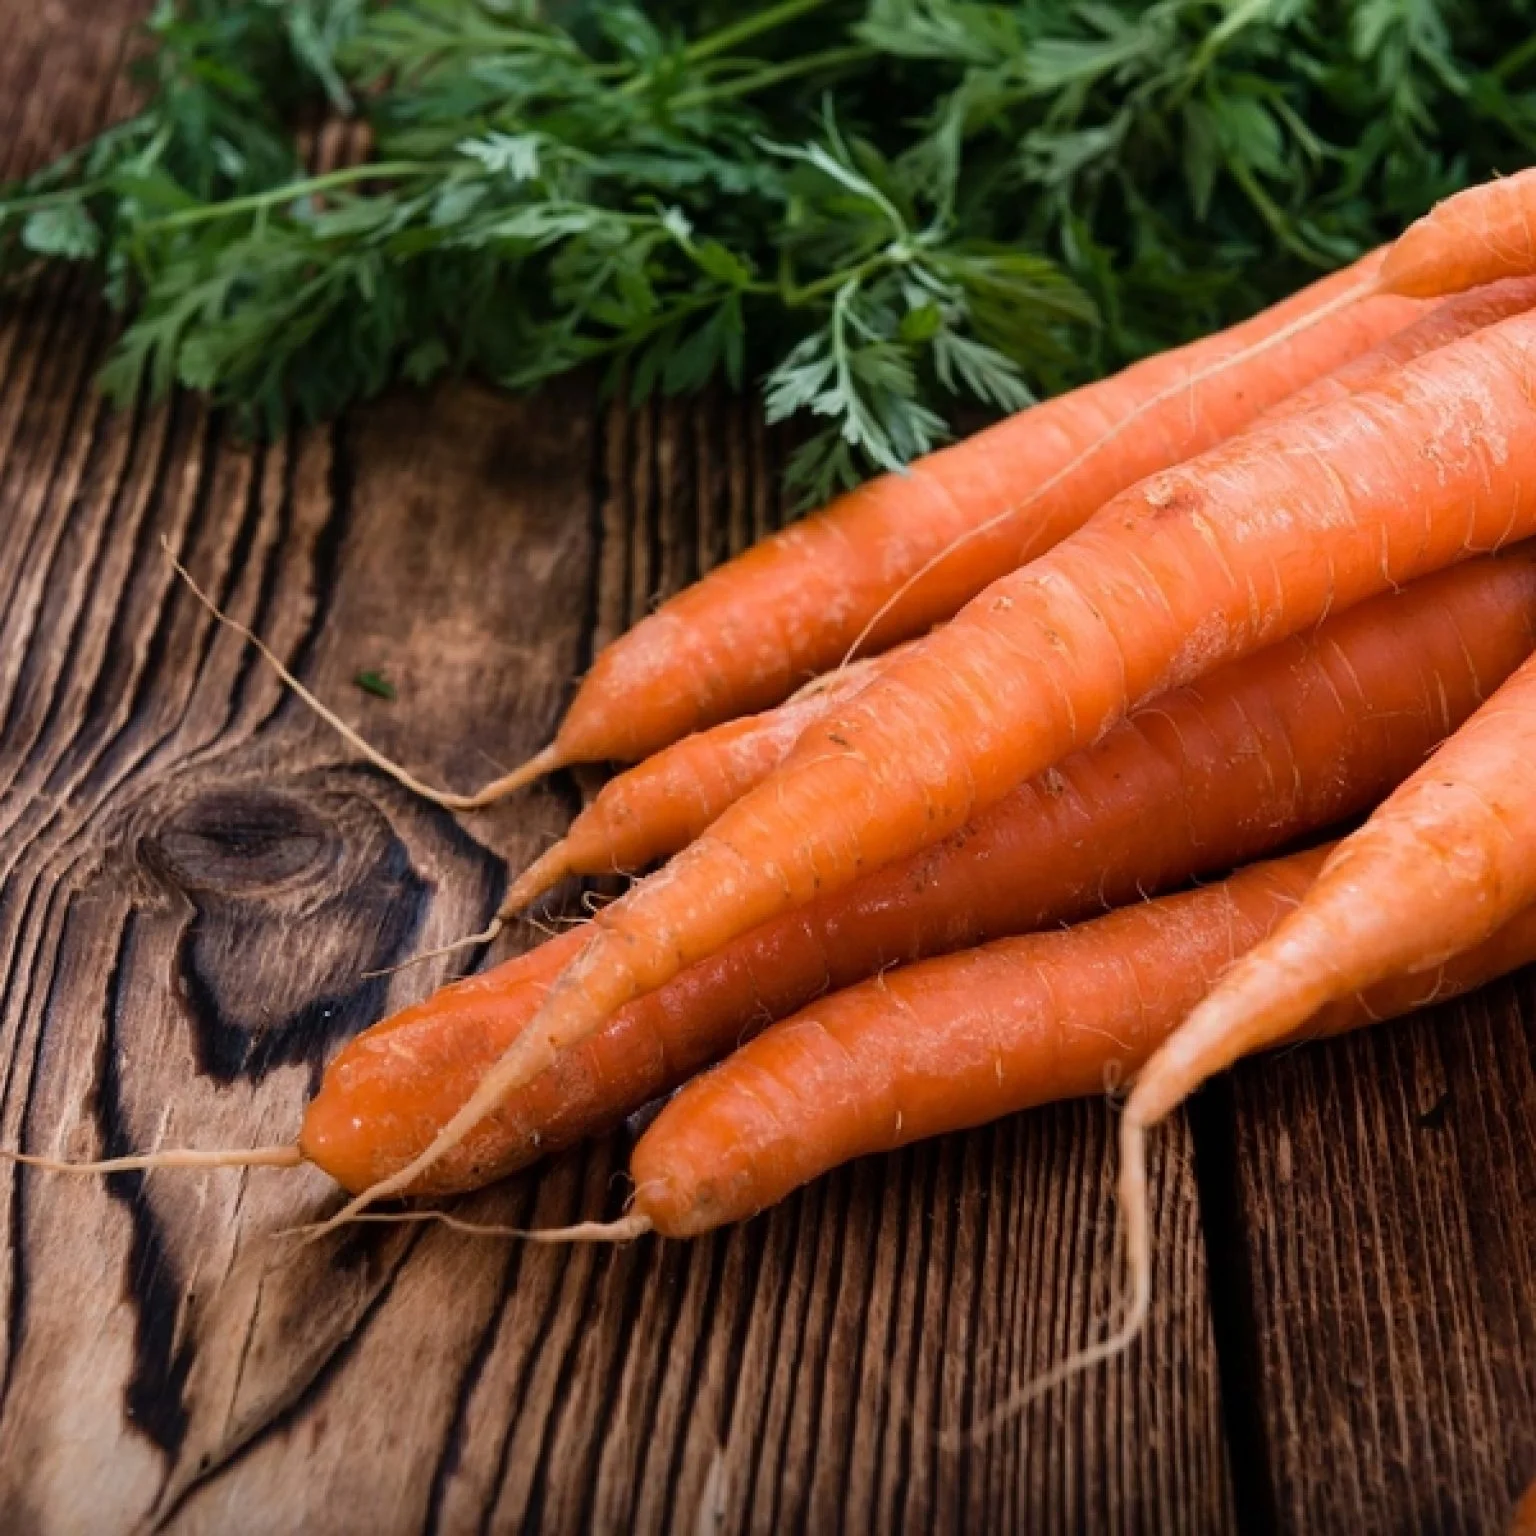 Когда наступает последний срок посадки моркови? какие факторы влияют на определение времени?